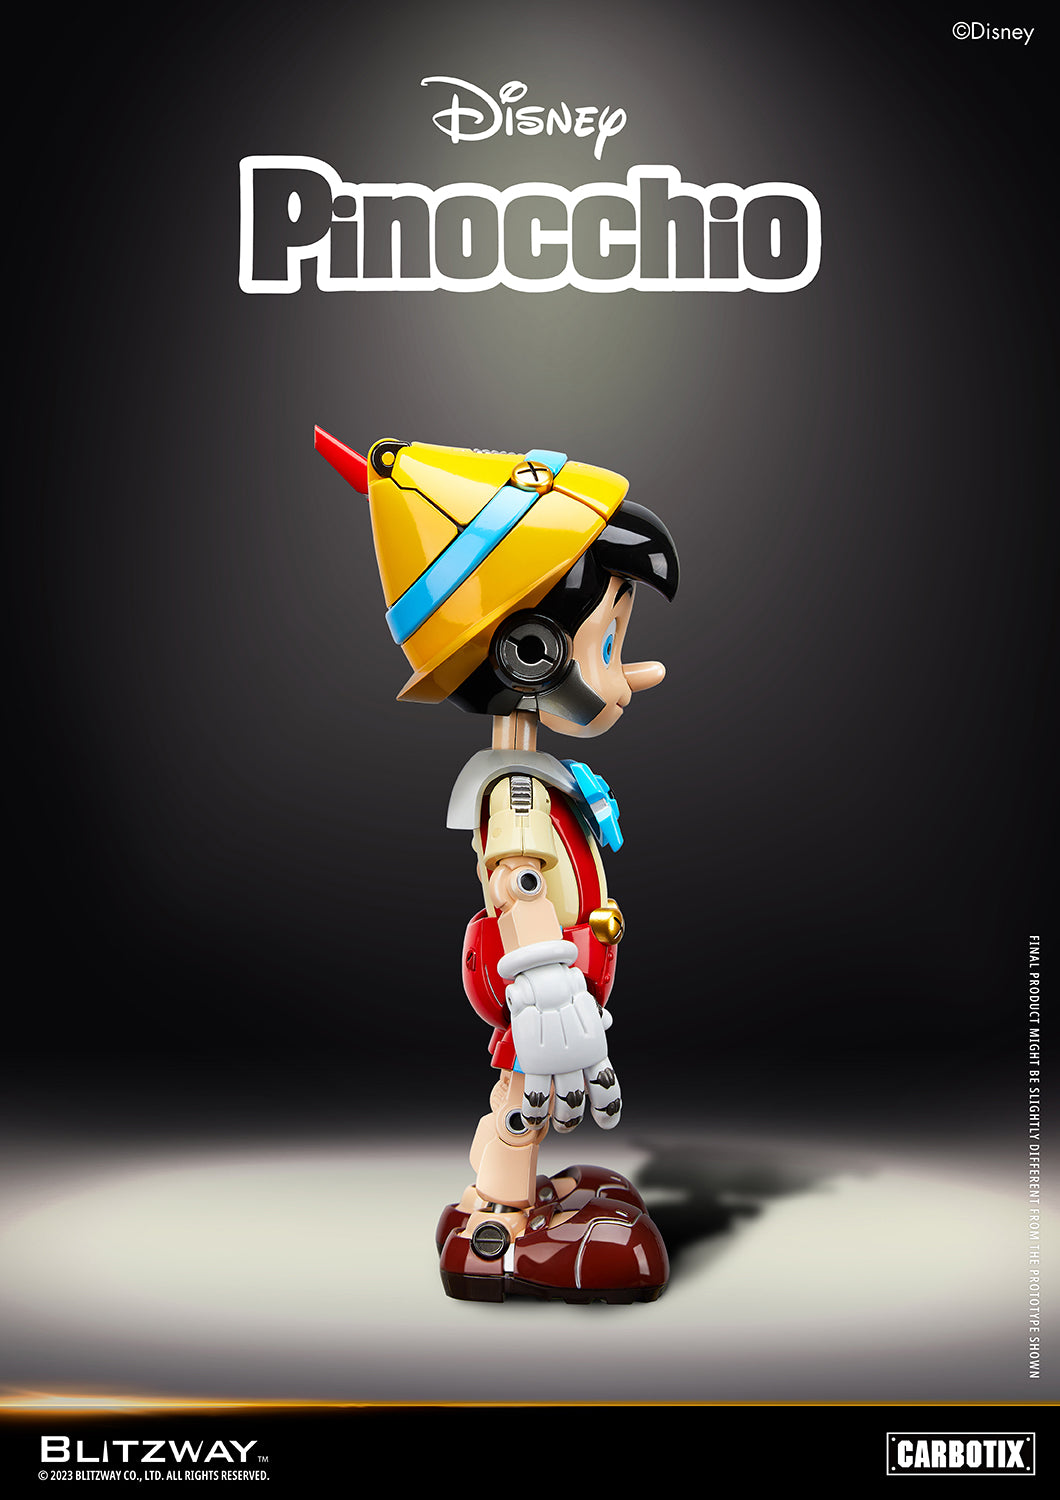 Blitzway - Carbotix - Disney&#39;s Pinocchio - Marvelous Toys